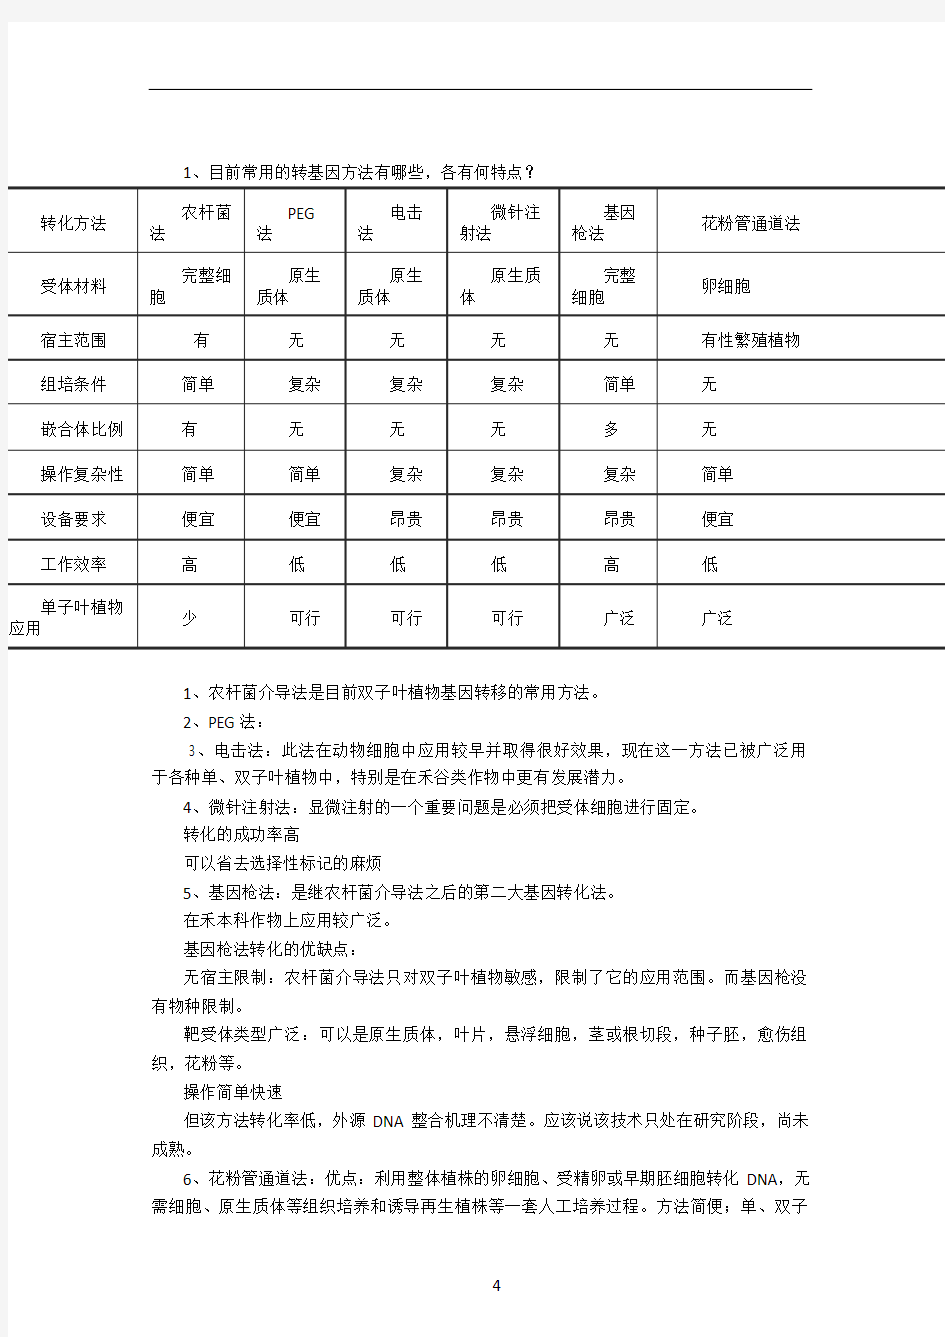 吉大农学部09生计工程复习资料(附答案) (1)